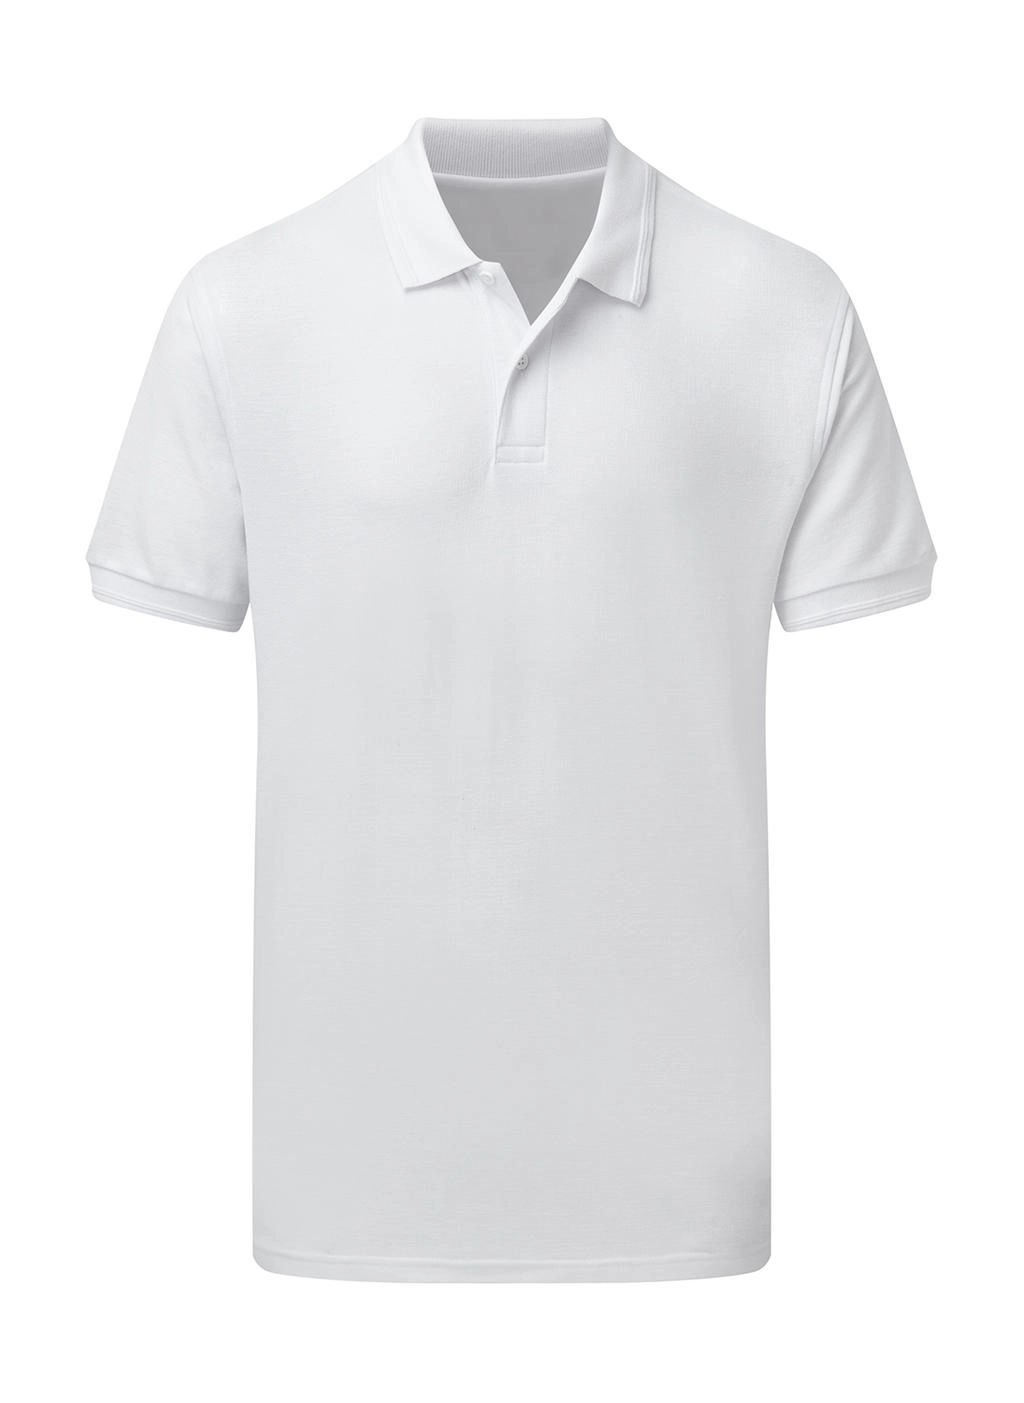 Poly Cotton Polo Men zum Besticken und Bedrucken in der Farbe White mit Ihren Logo, Schriftzug oder Motiv.